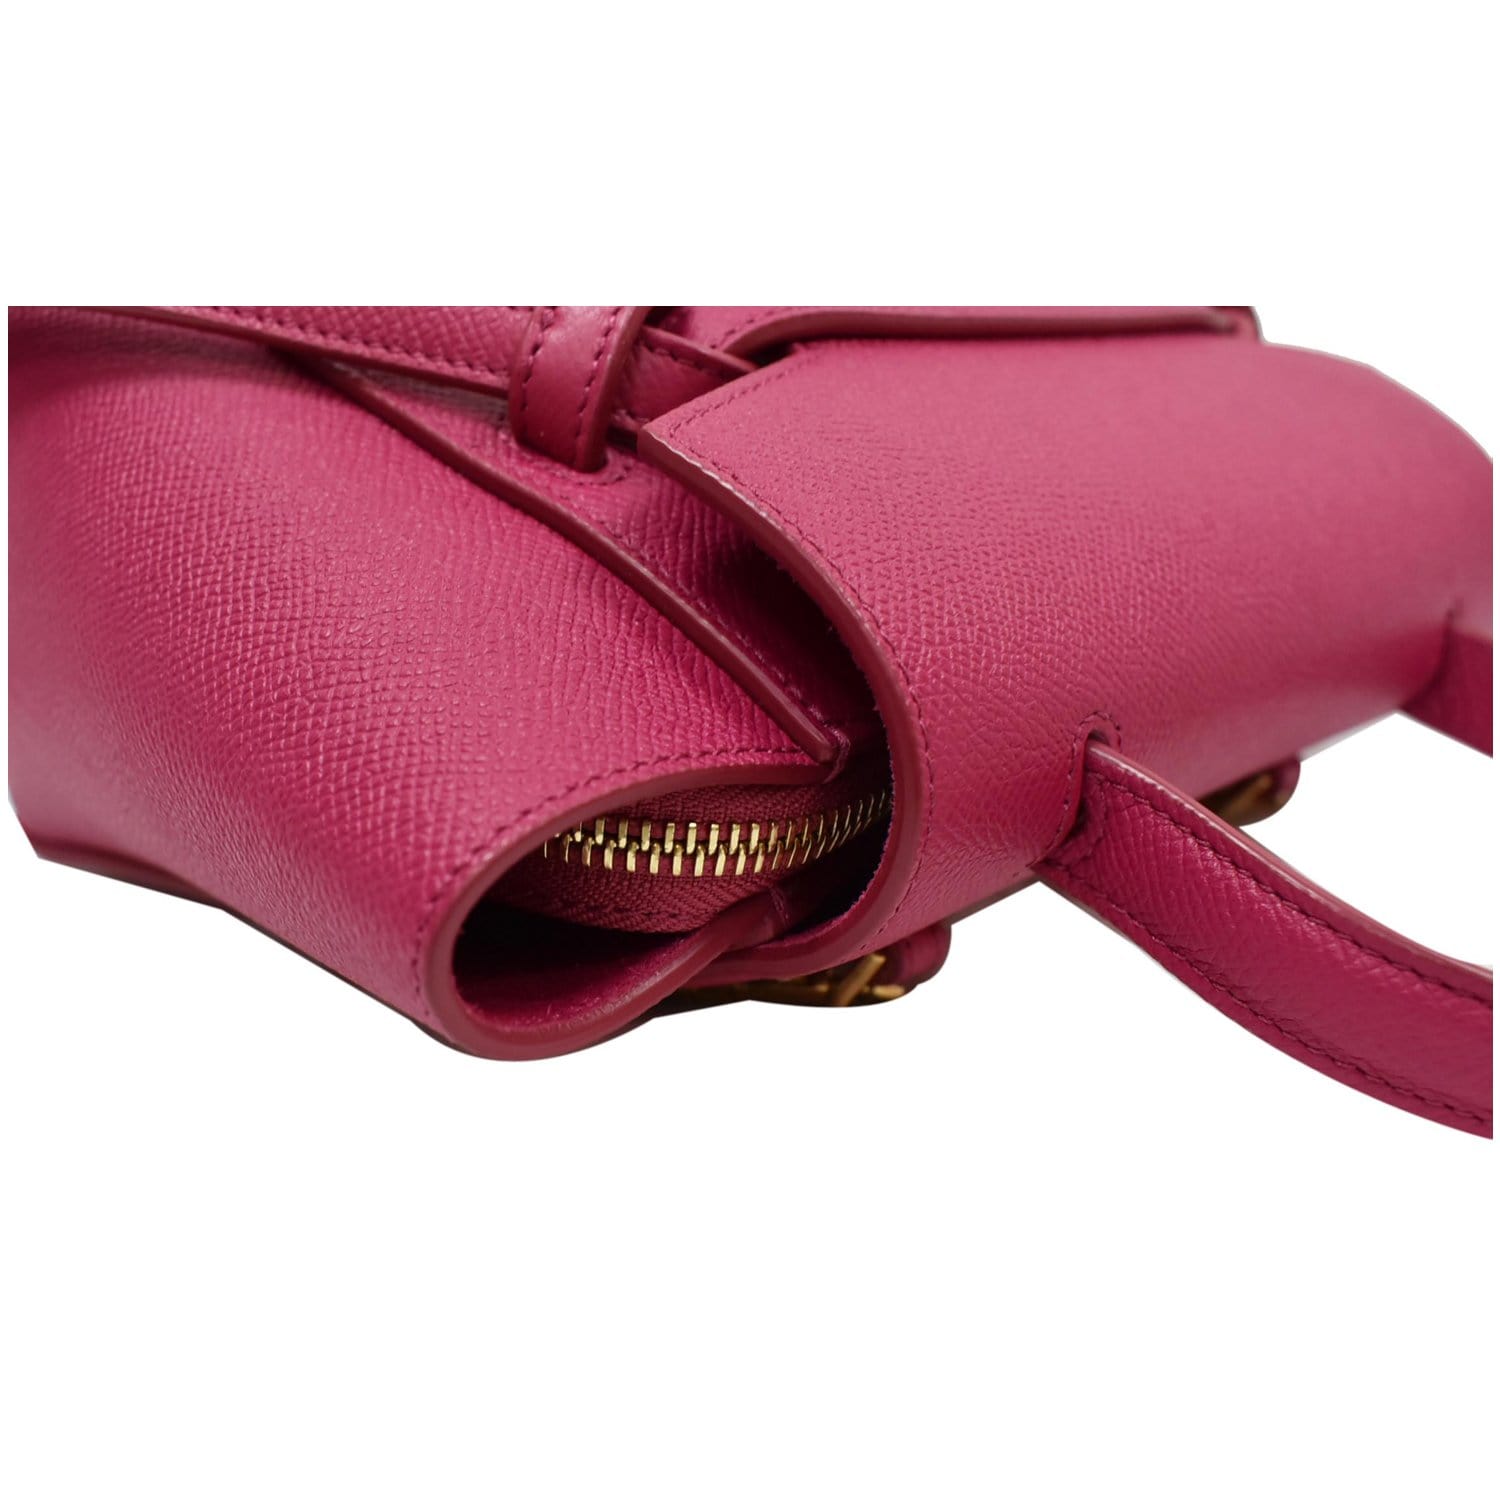 CELINE Nano Belt Grained Calfskin 2Way Shoulder Bag Light Pink